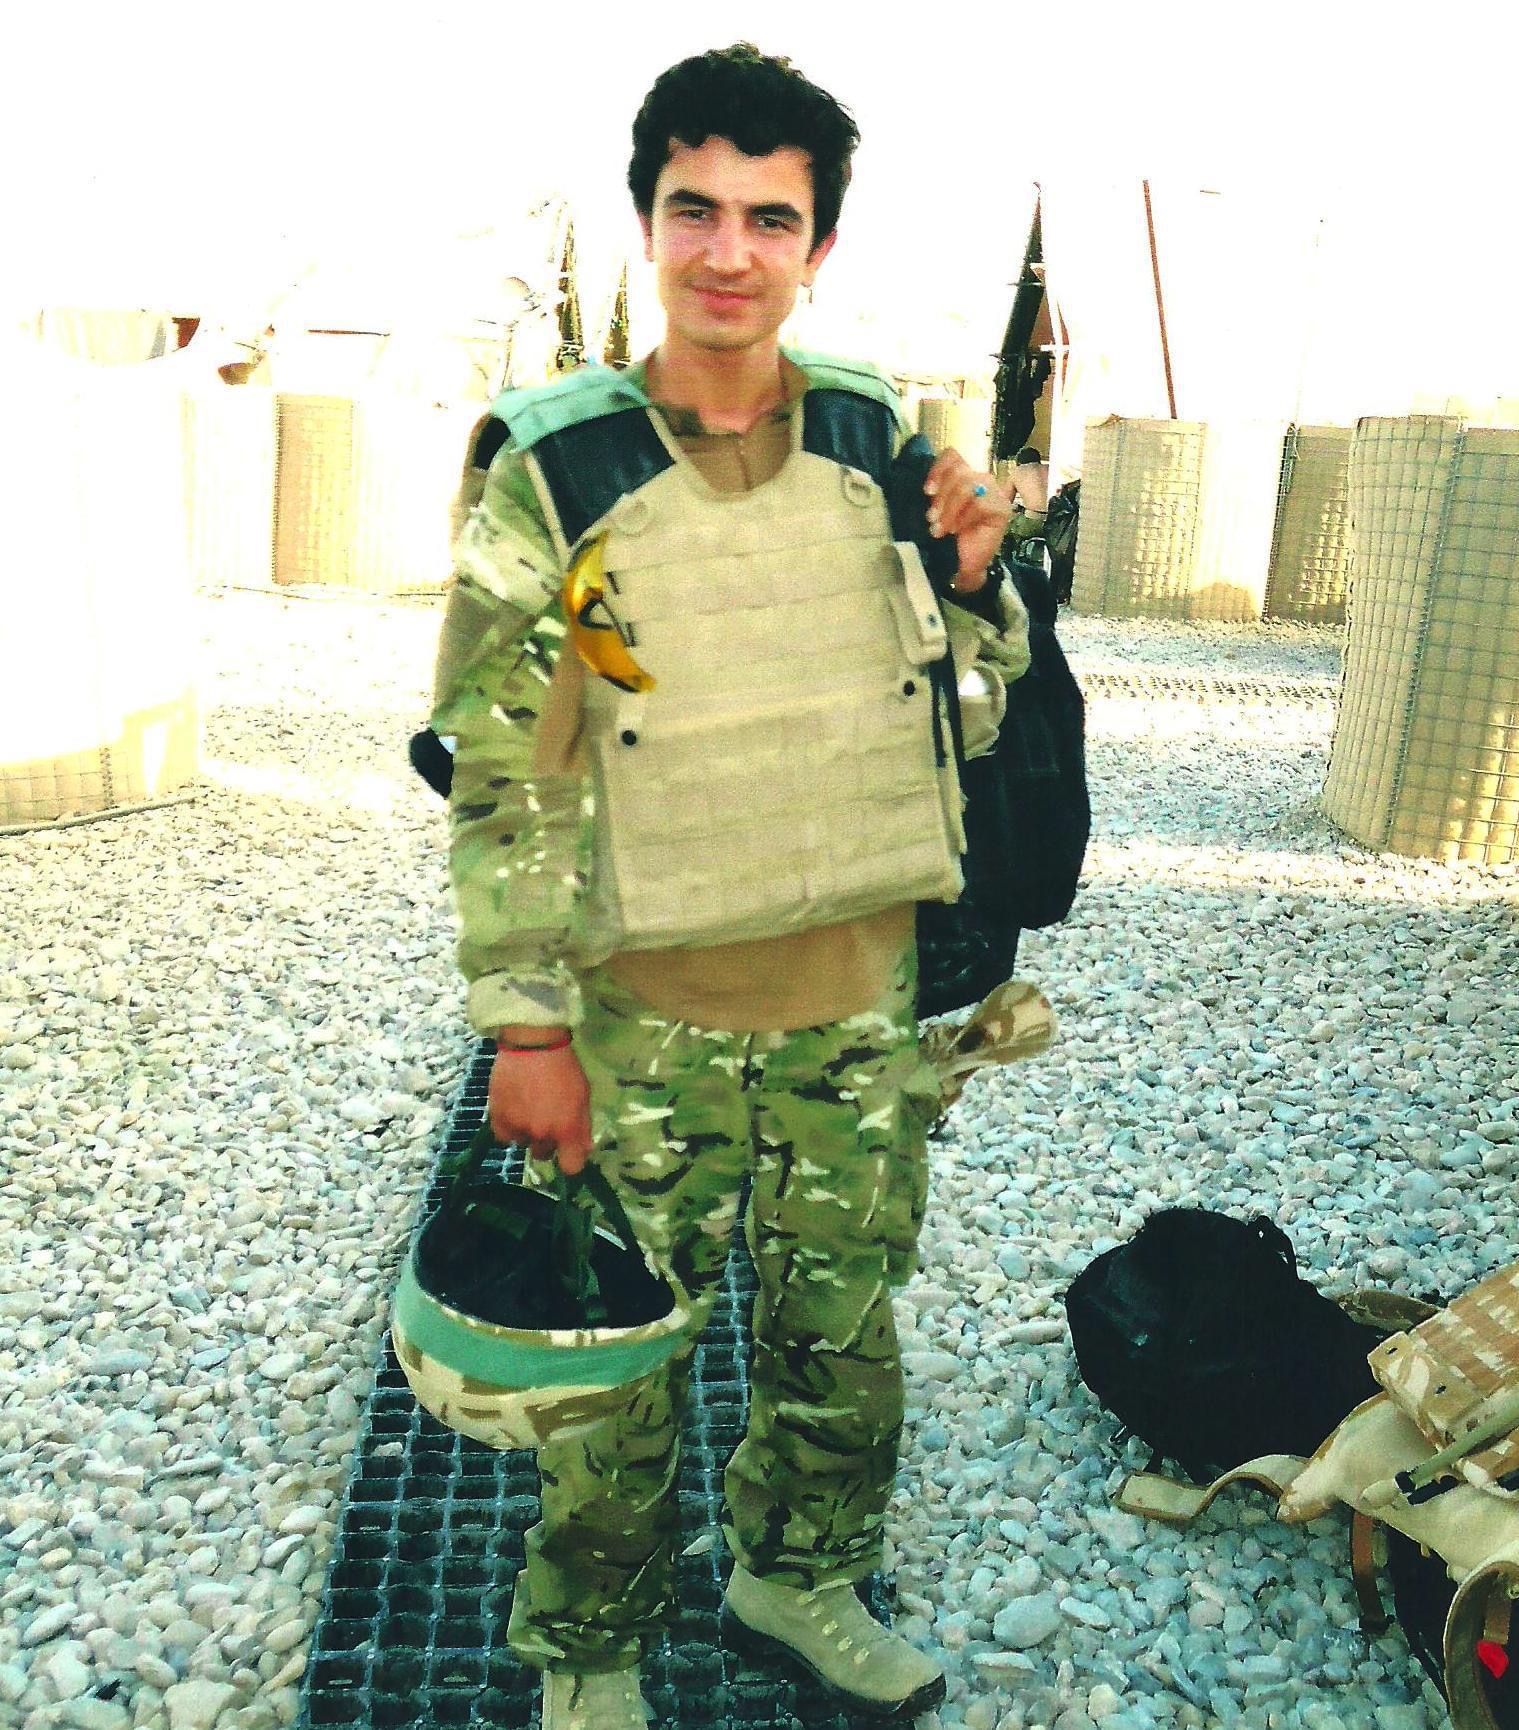 Burhan arbeitete von 2008 bis 2011 als Dolmetscher und Übersetzer für die britische Armee und wurde damit zum Ziel für Aufständische